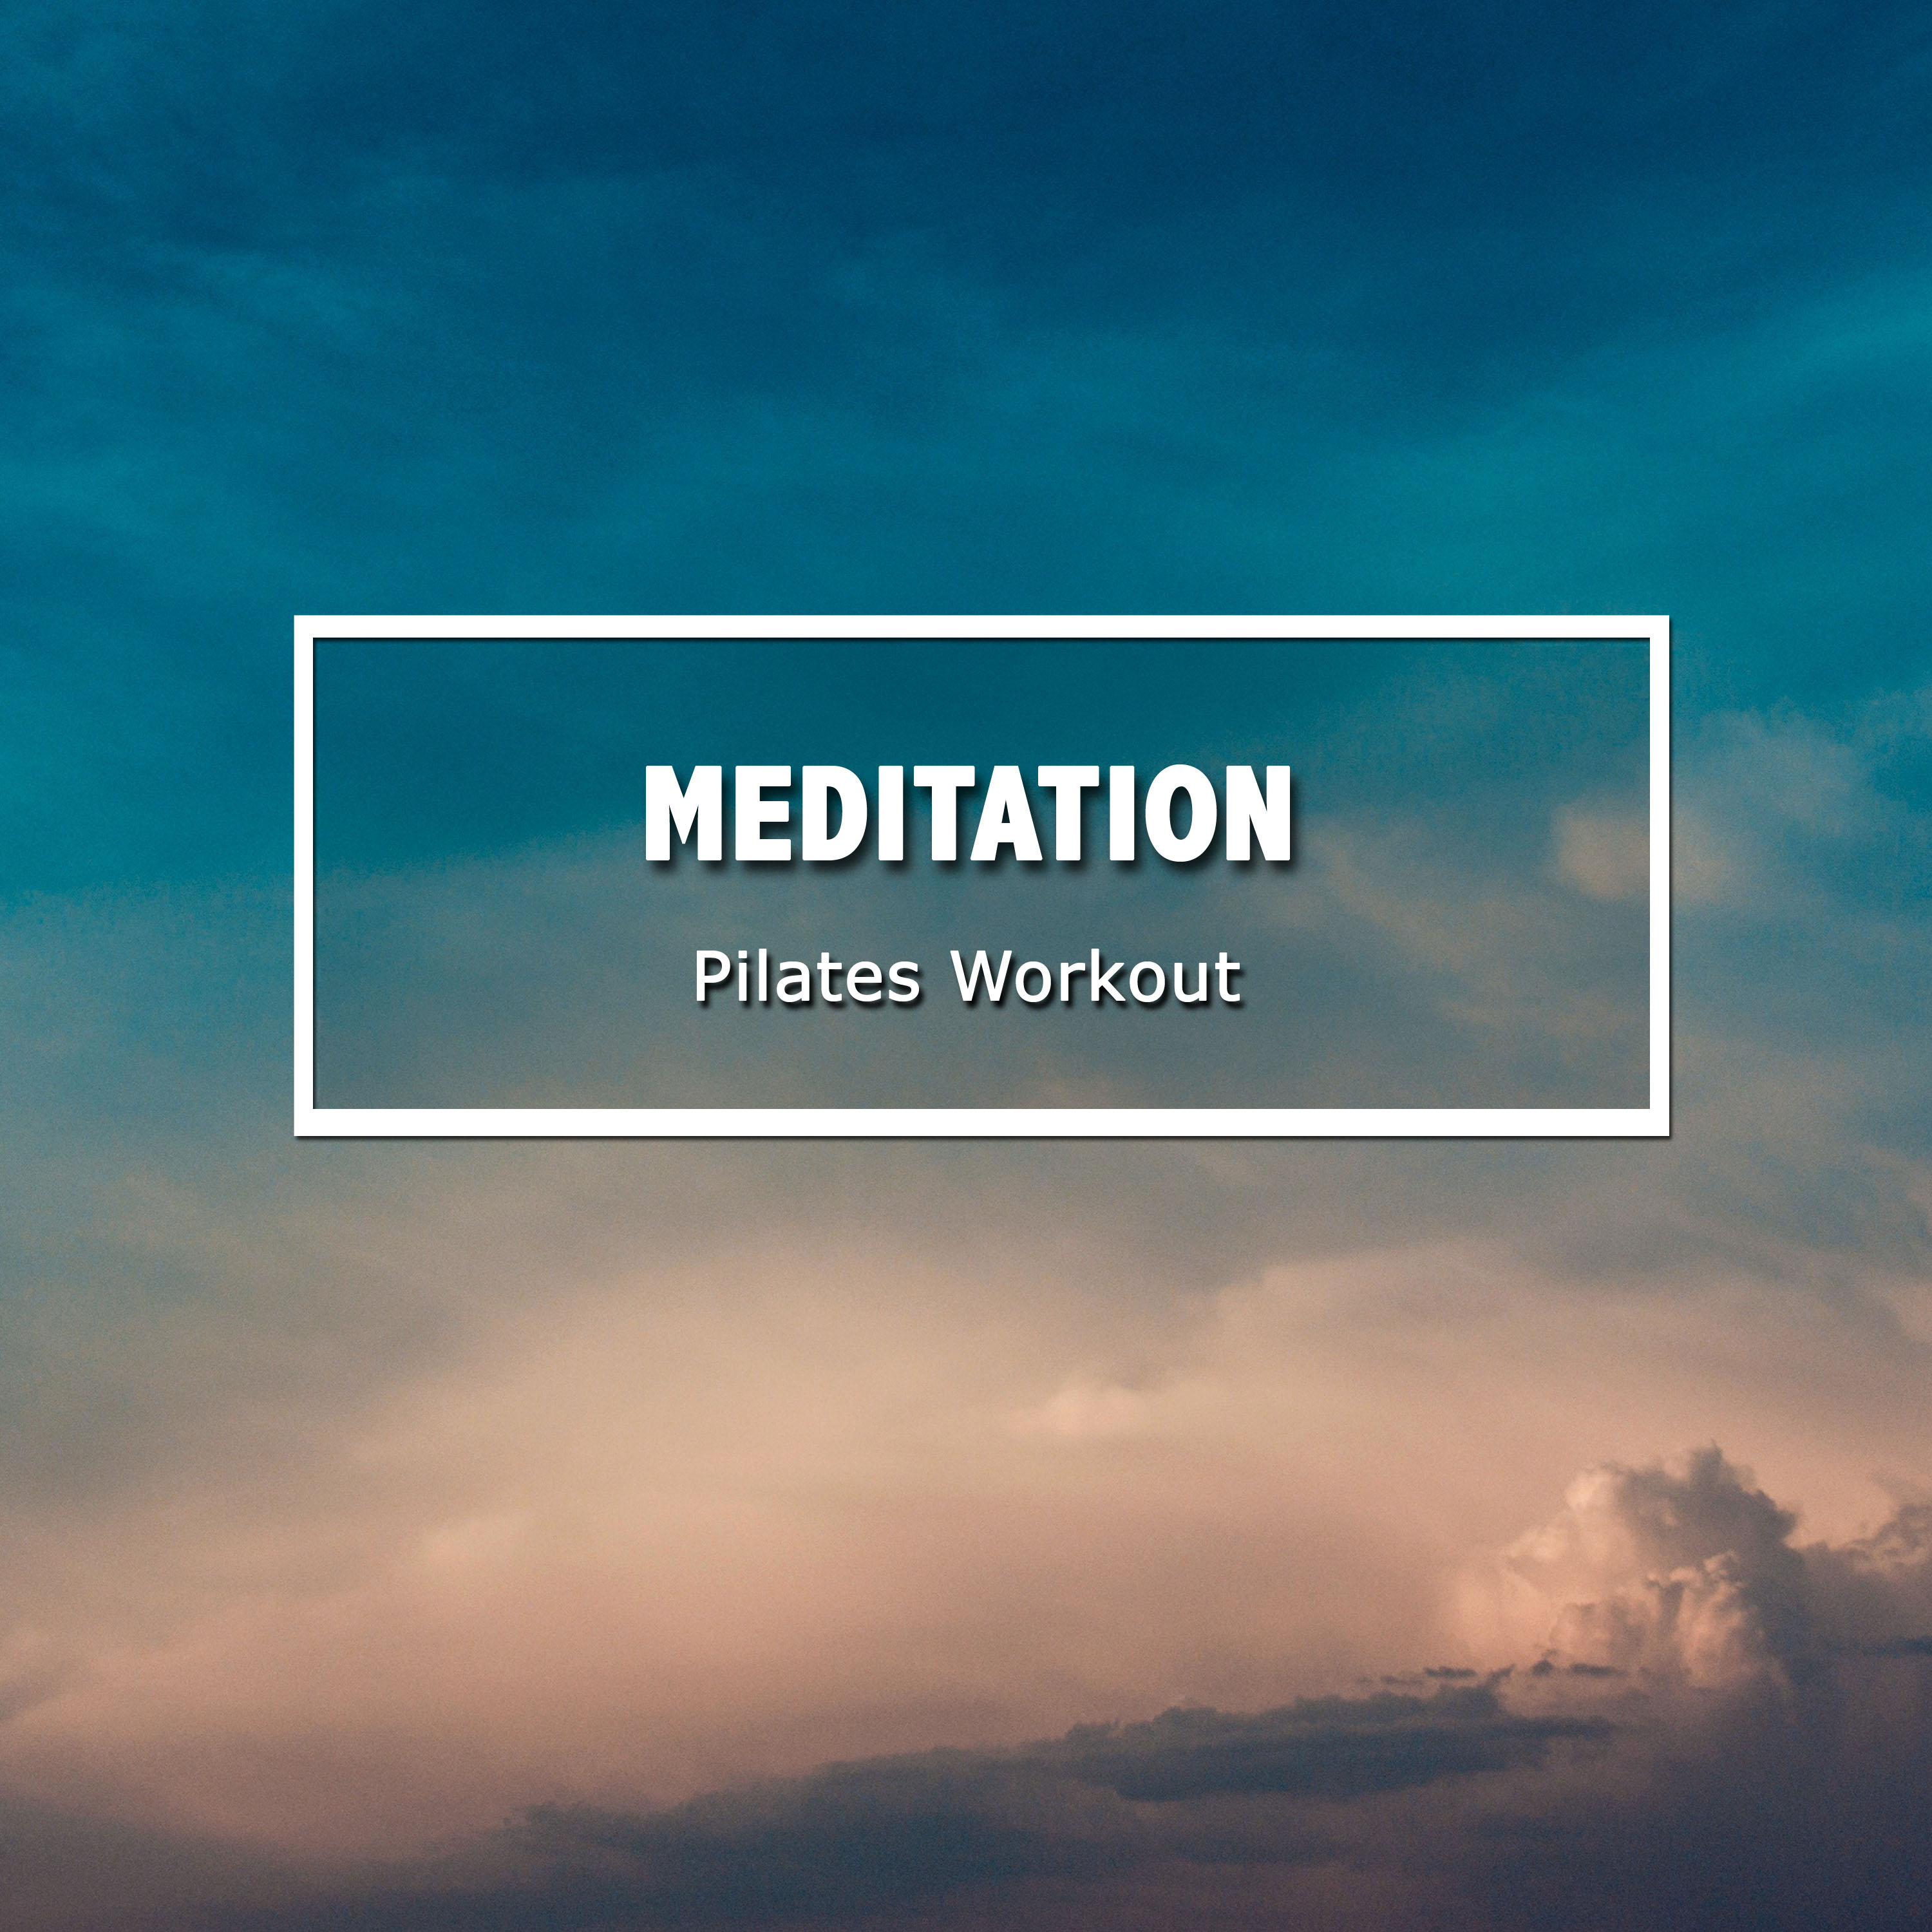 12 Tracks for Meditation & Pilates Workout